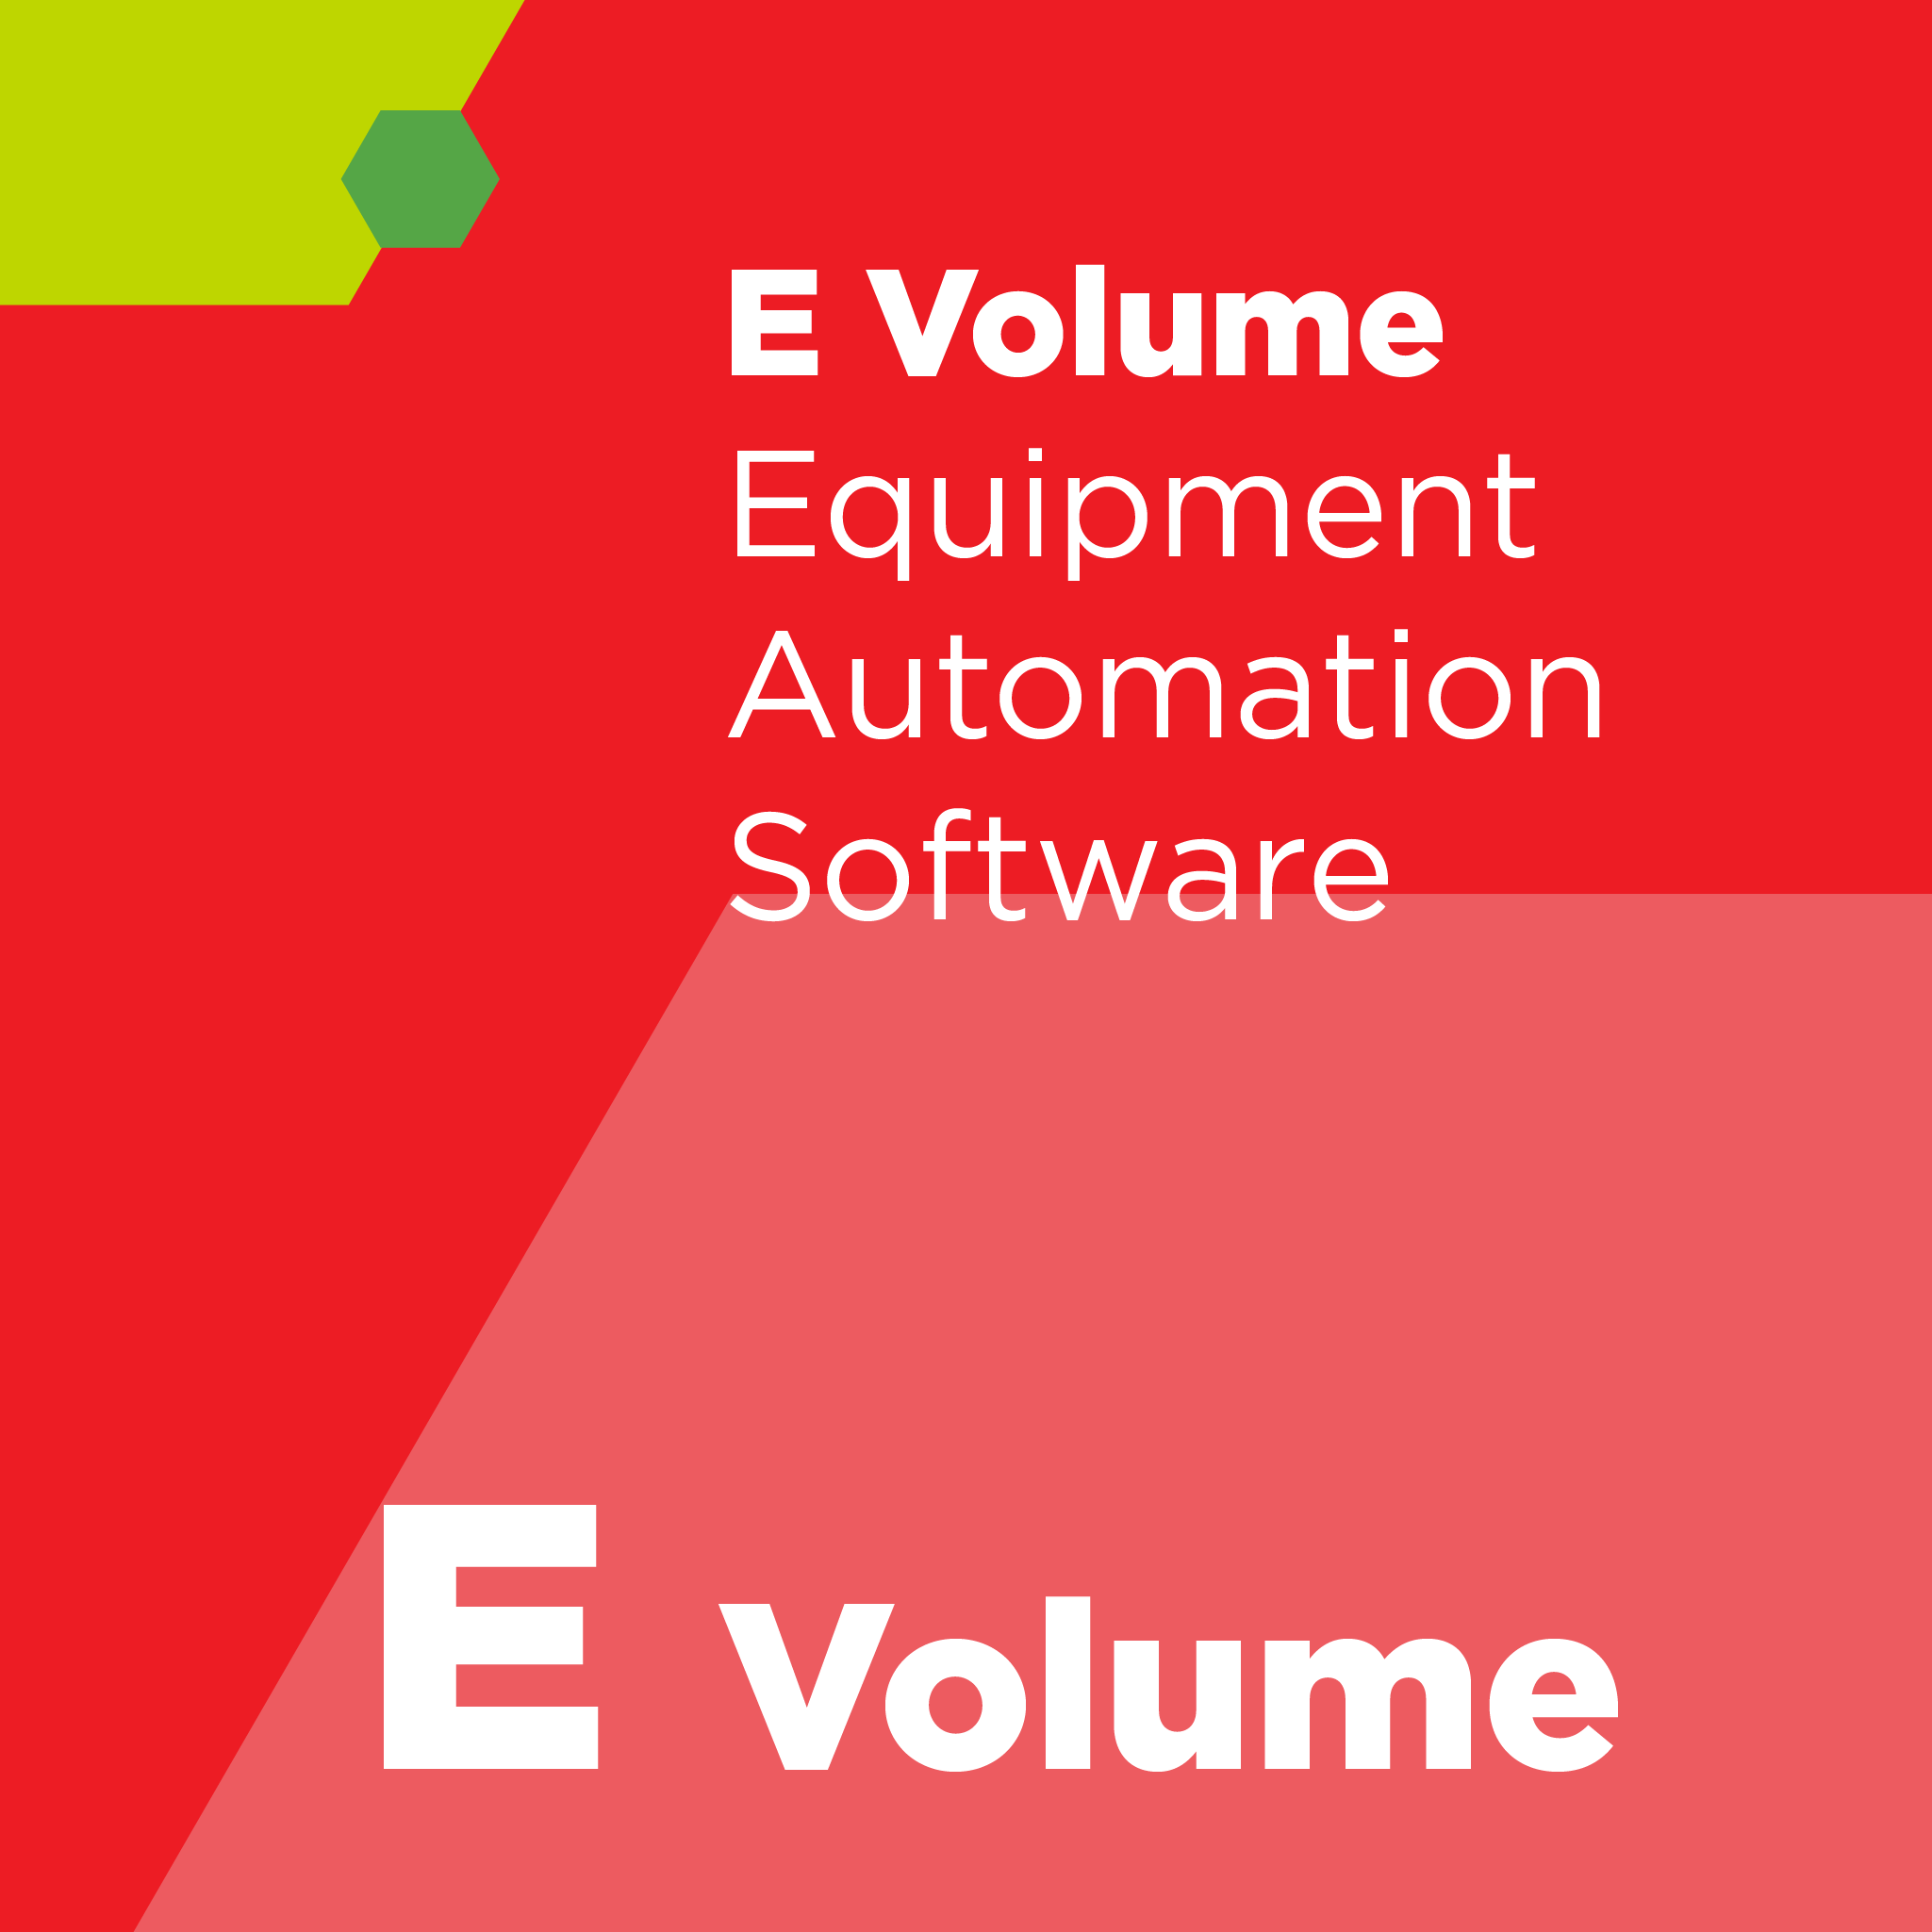 E05800 - SEMI E58 - 自動化による信頼性，有用性，および整備性に関するスタンダード（ARAMS）：コンセプト，挙動，およびサービス